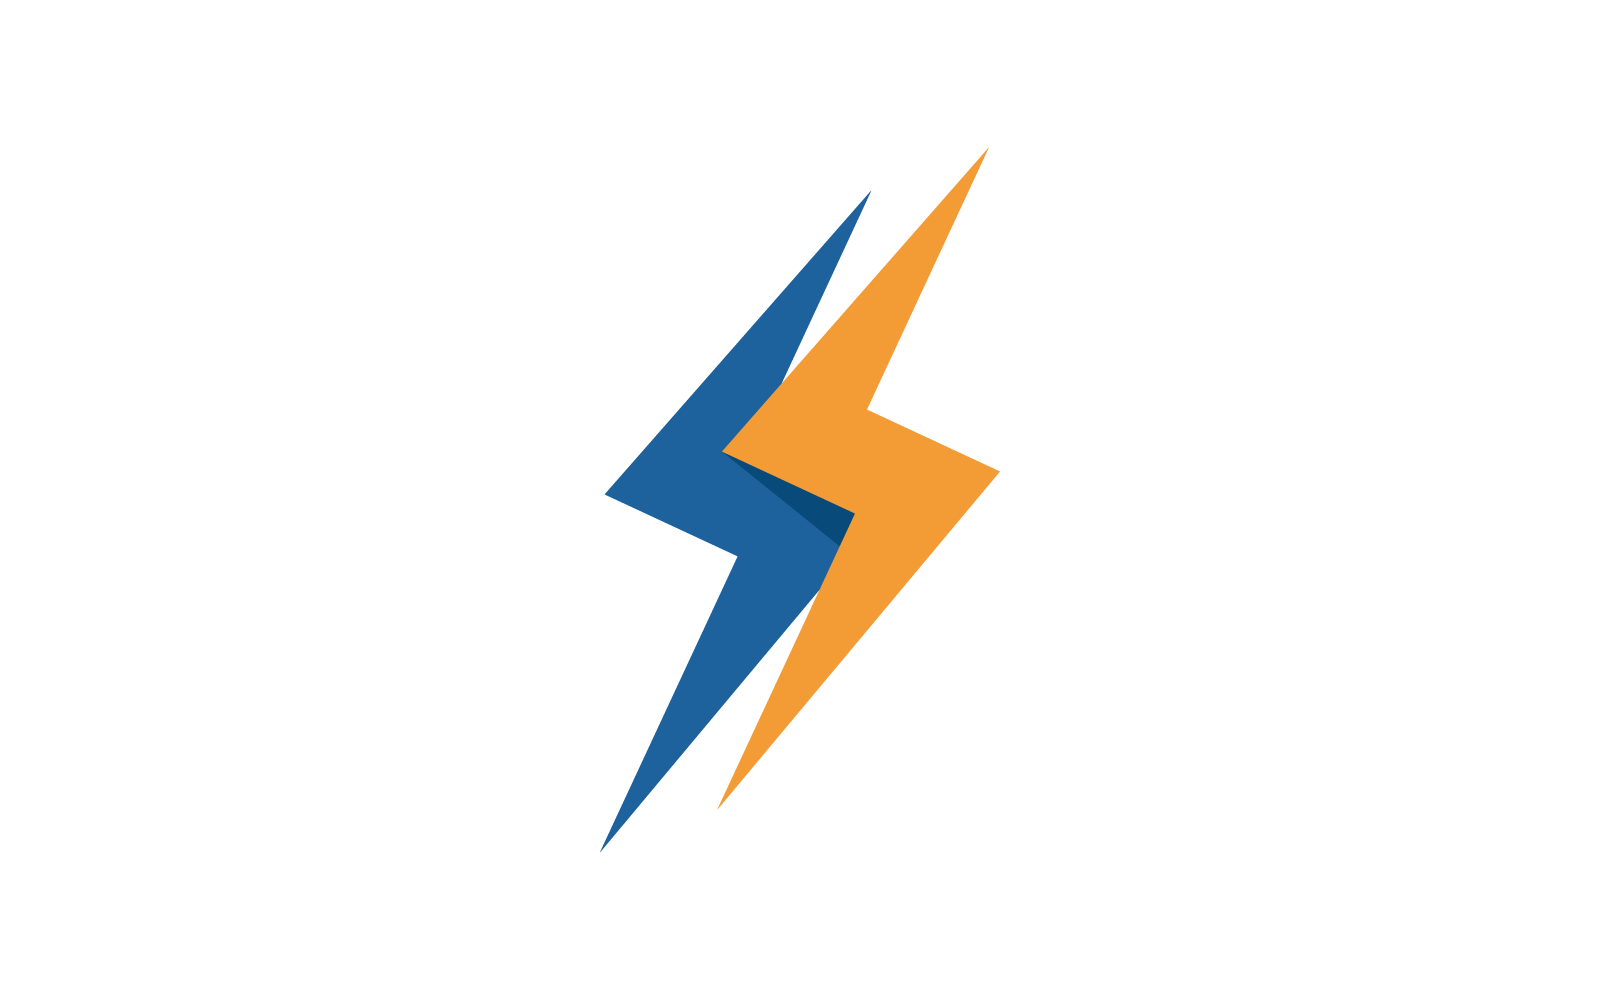 Power lightning power energy illustration vector logo template Logo Template